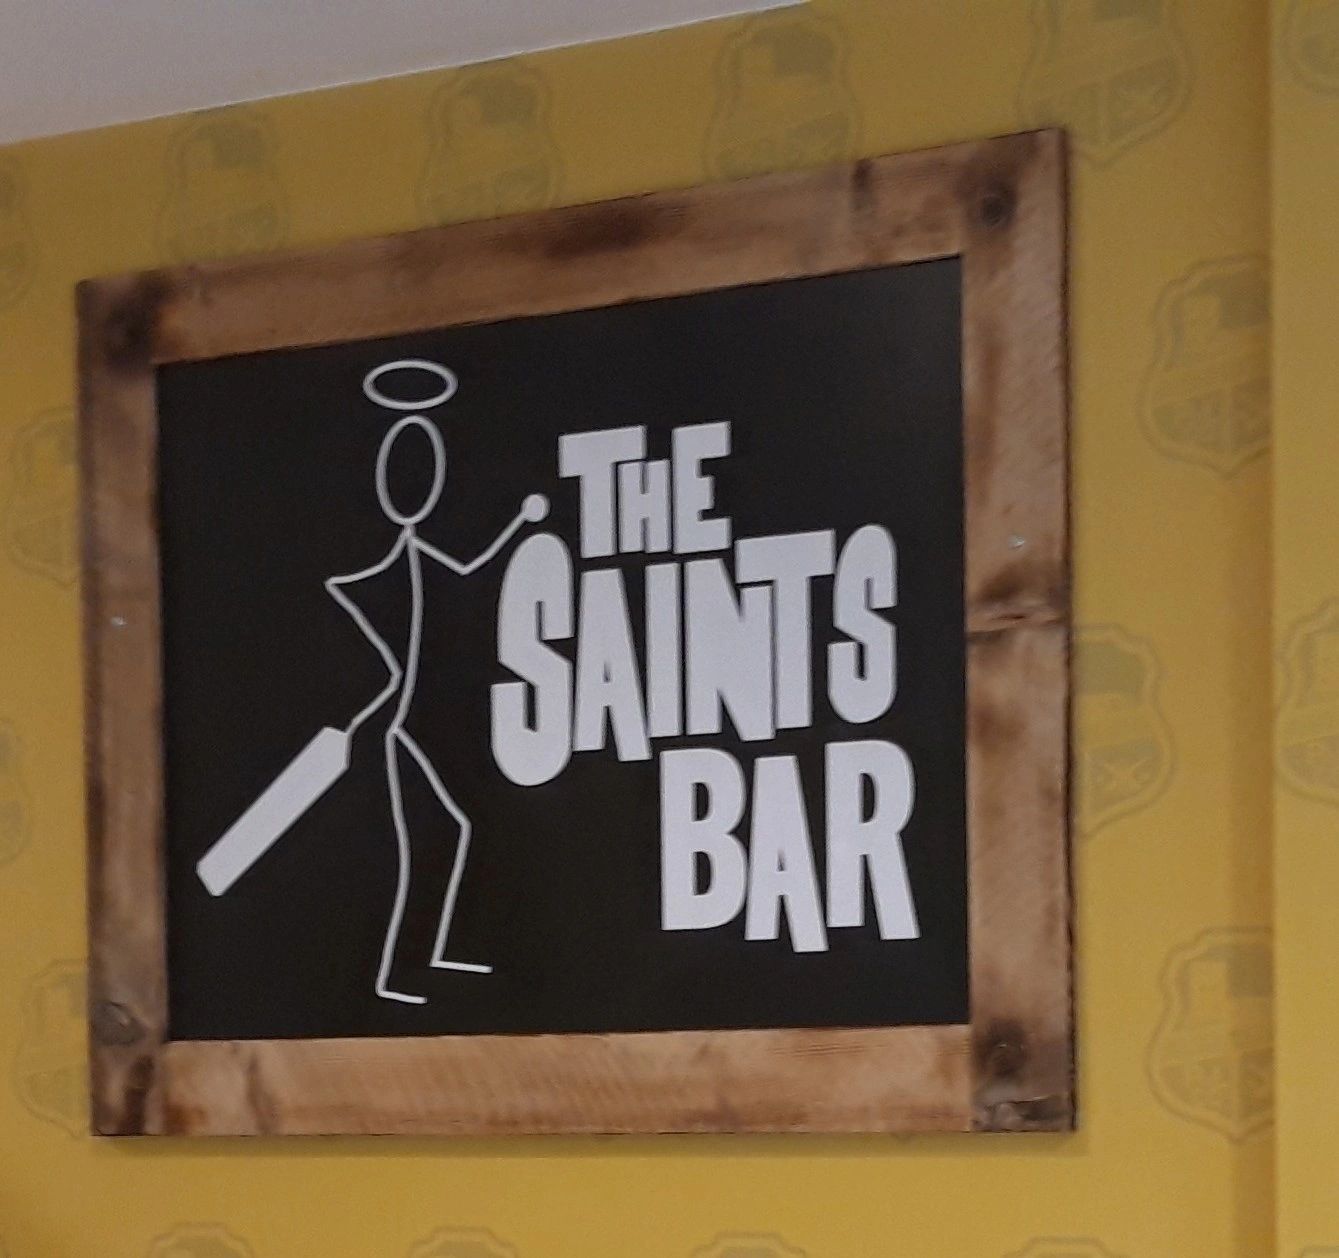 Saints Bar open 2-6pm today!